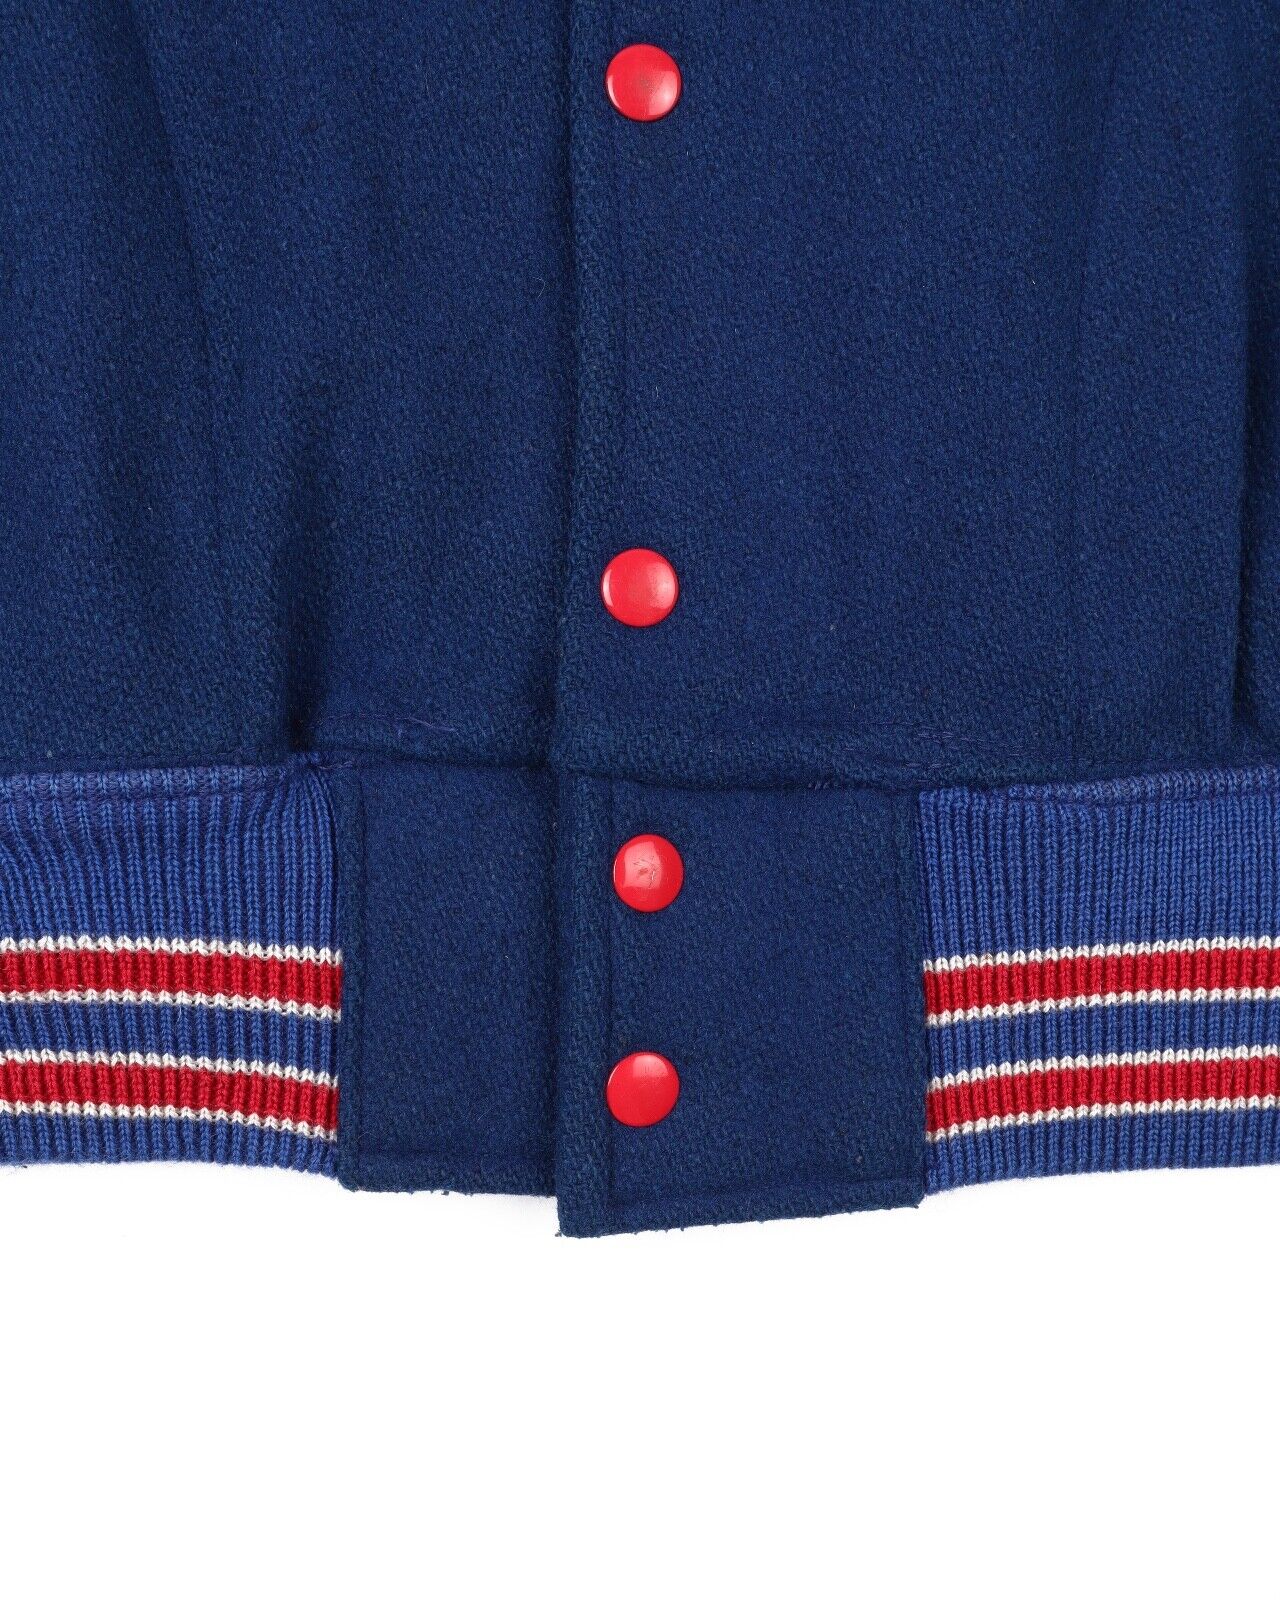 Vintage COSBY New York Rangers NHL Varsity Jacket Blue Snap Men's Size